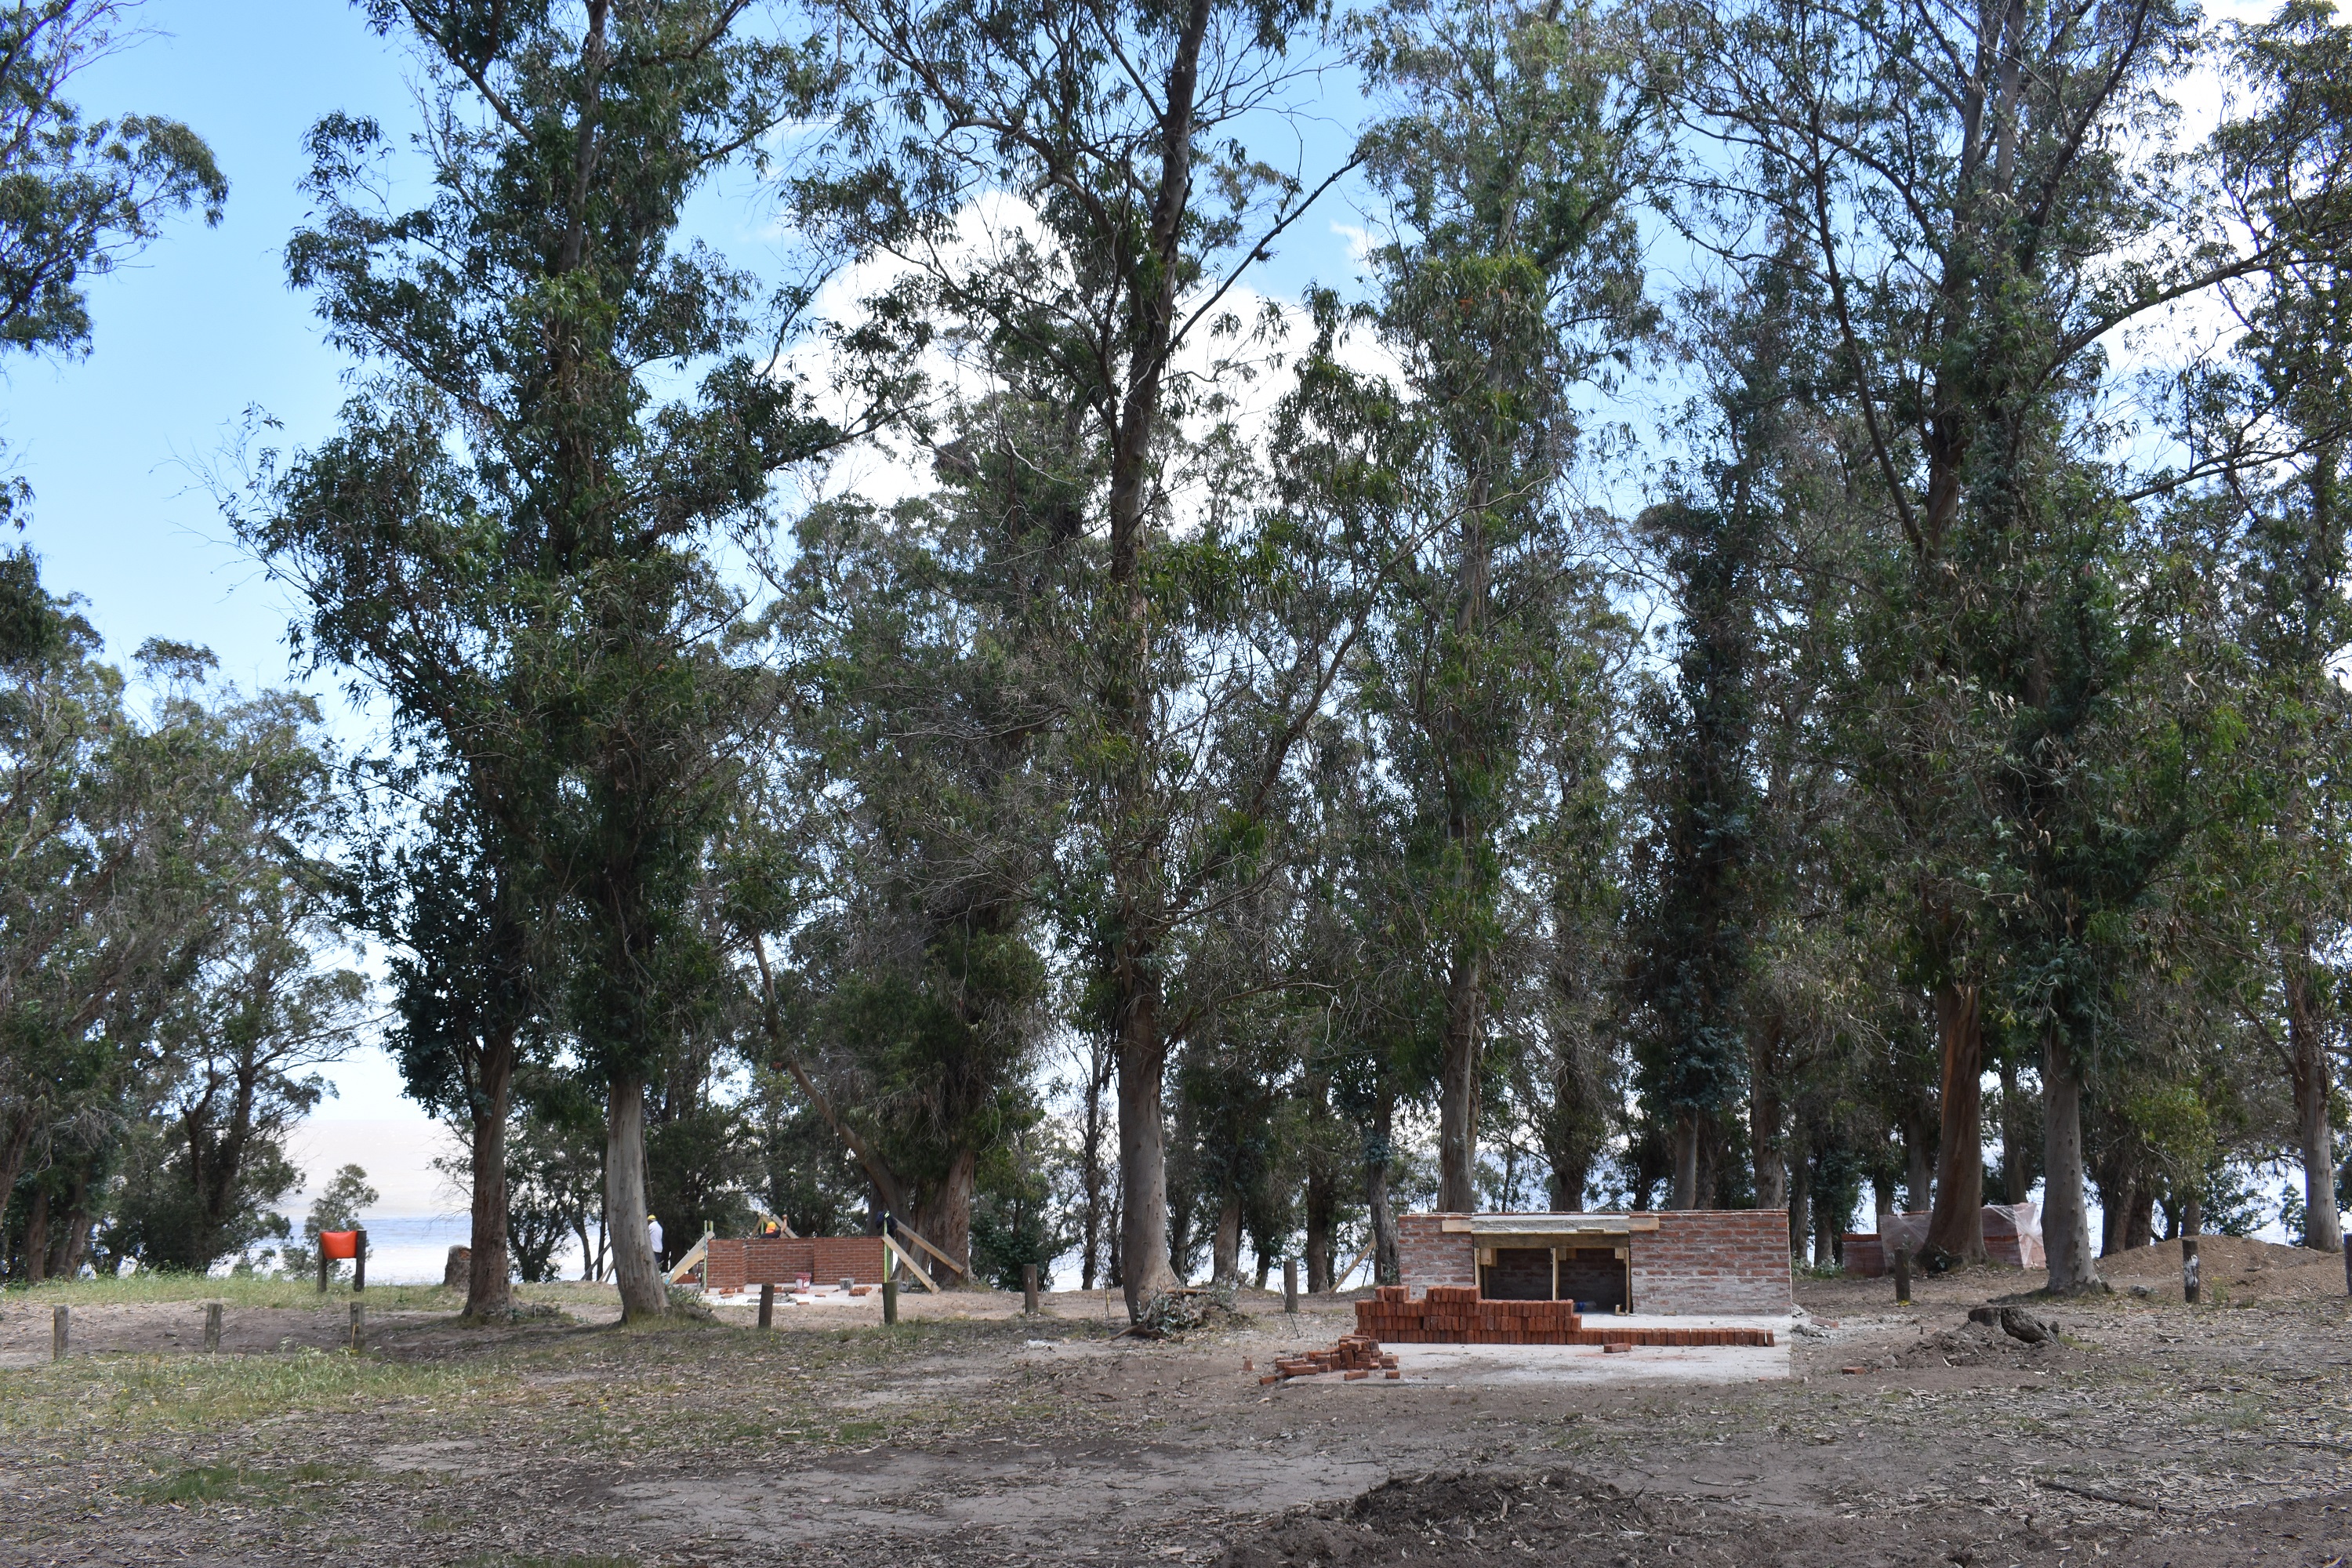 Avance de obras en parque Punta Espinillo